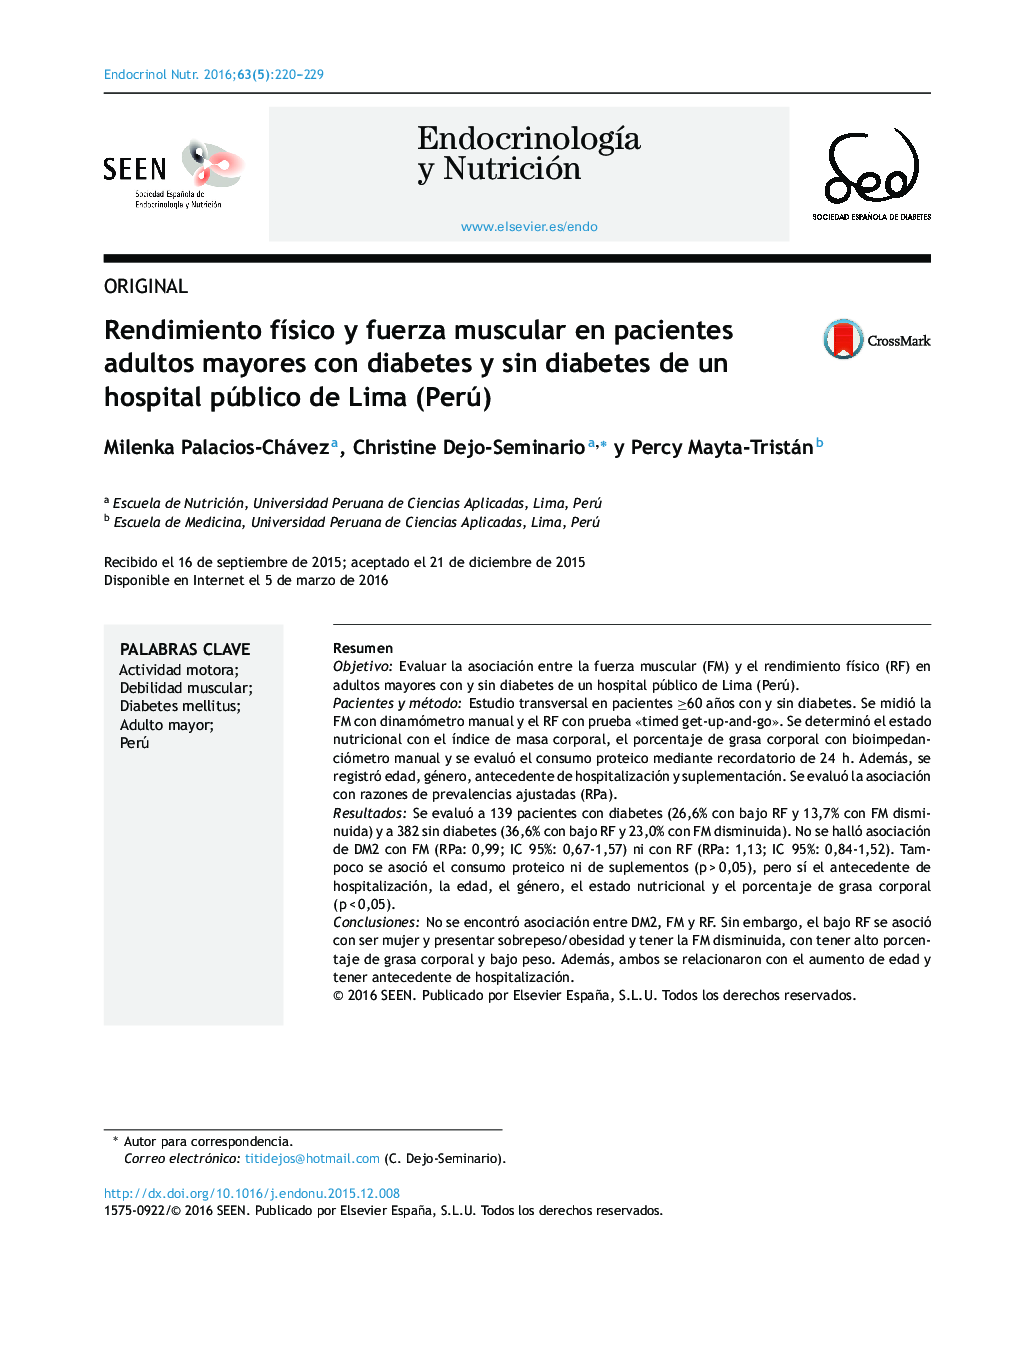 عملکرد فیزیکی و قدرت عضلانی در بیماران سالمند مبتلا به دیابت و بدون دیابت در بیمارستان دولتی لیما (پرو)